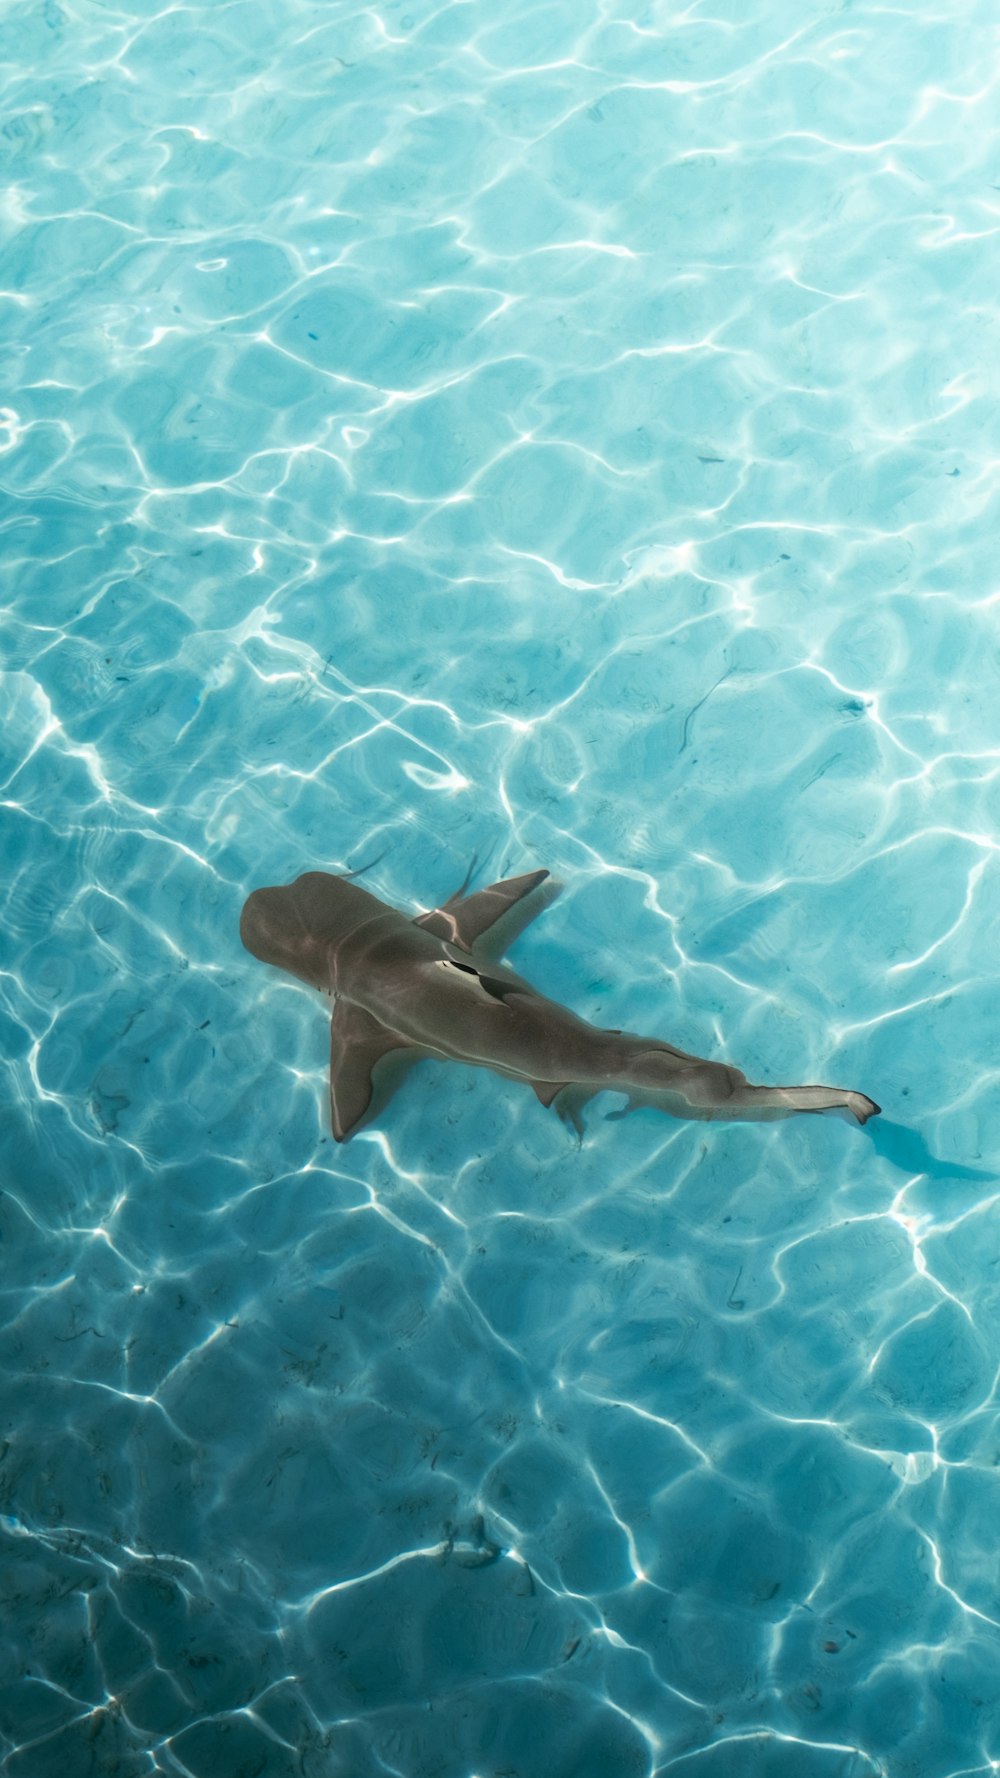 Un tiburón nadando en un charco de agua